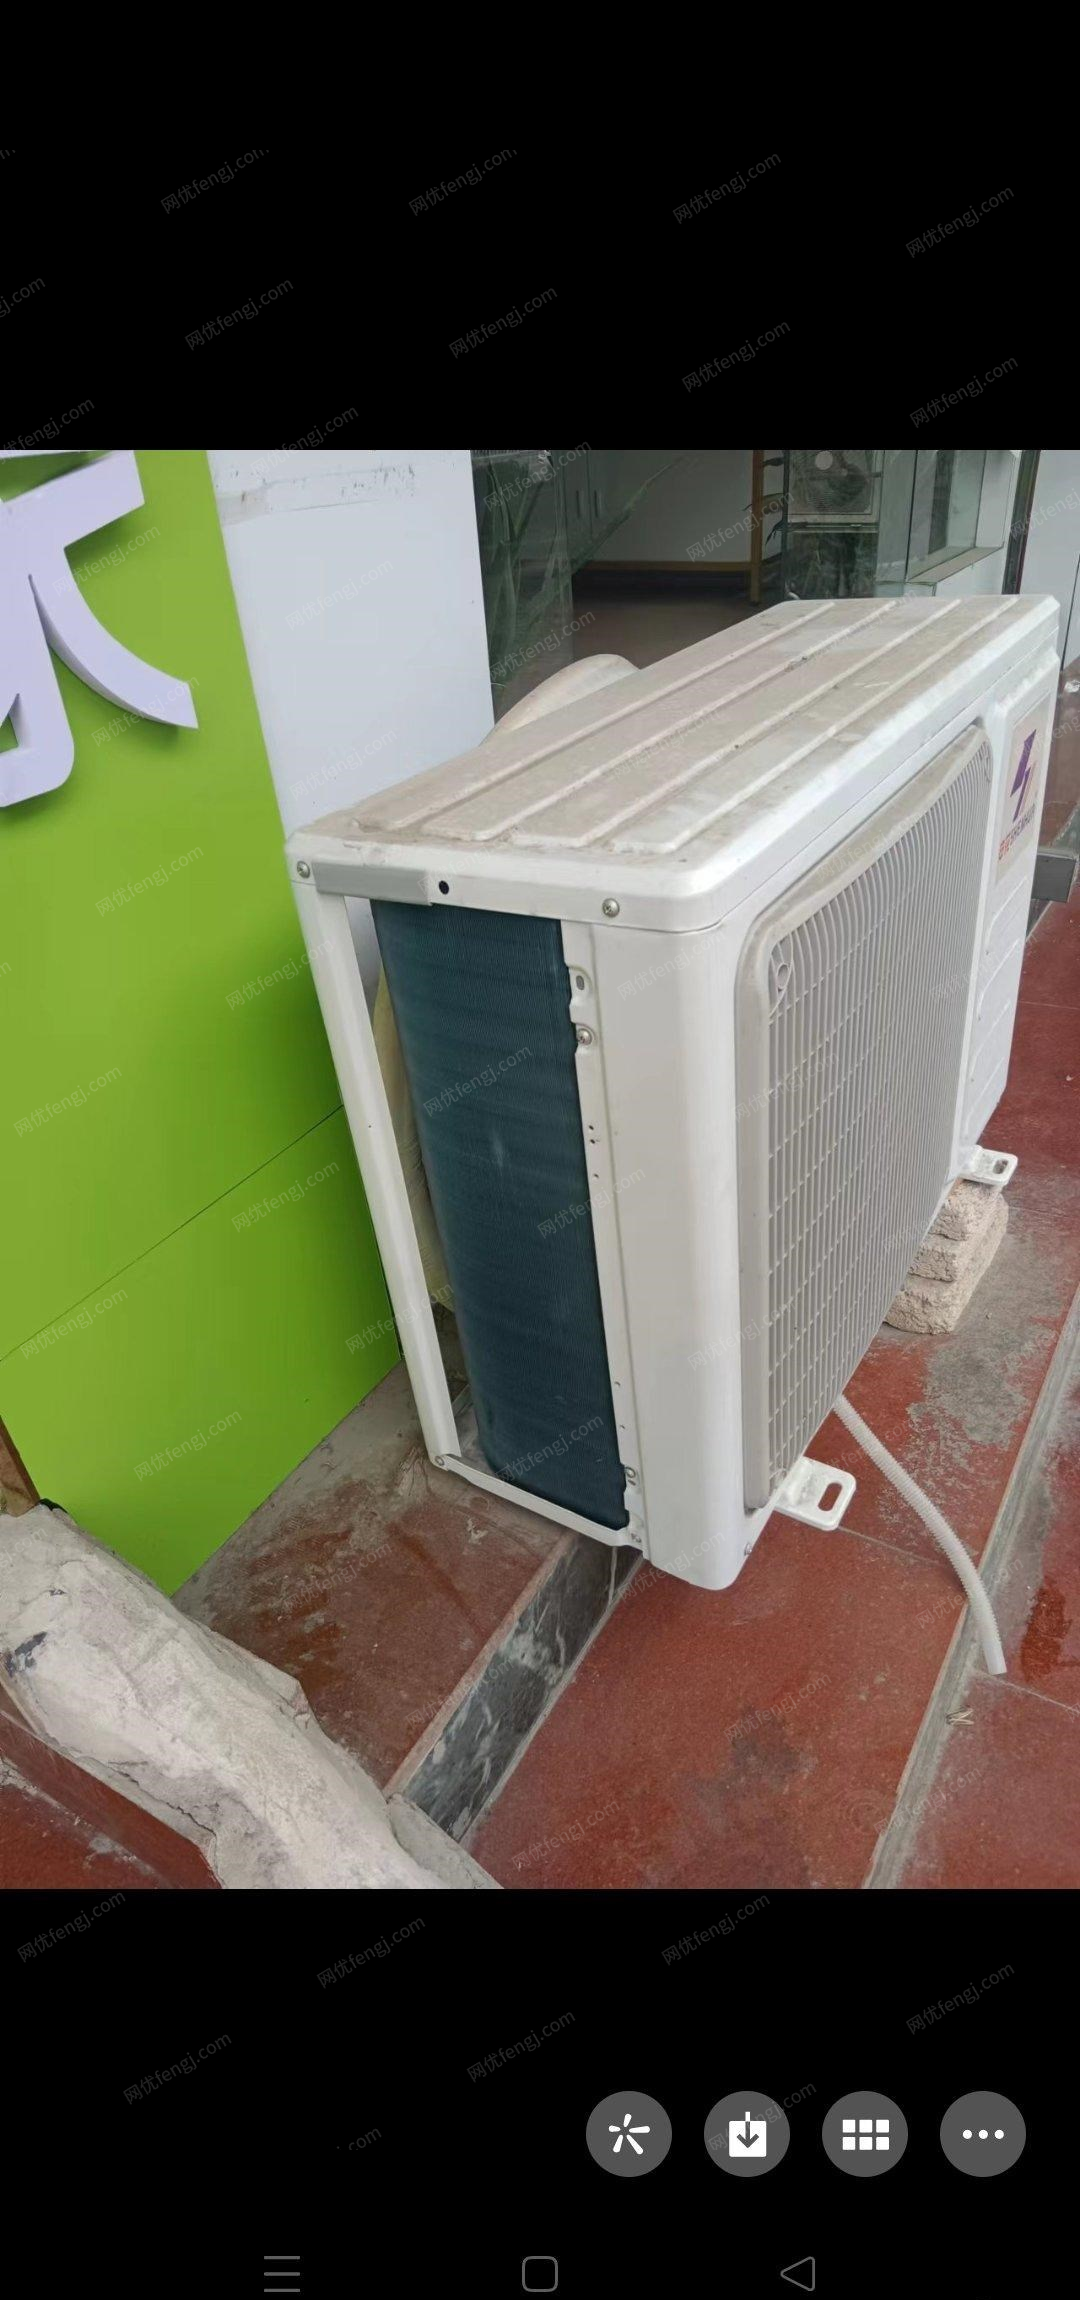 贵州铜仁现在个人原因,九九新空调柜机便宜出售,买回来还没怎么用 